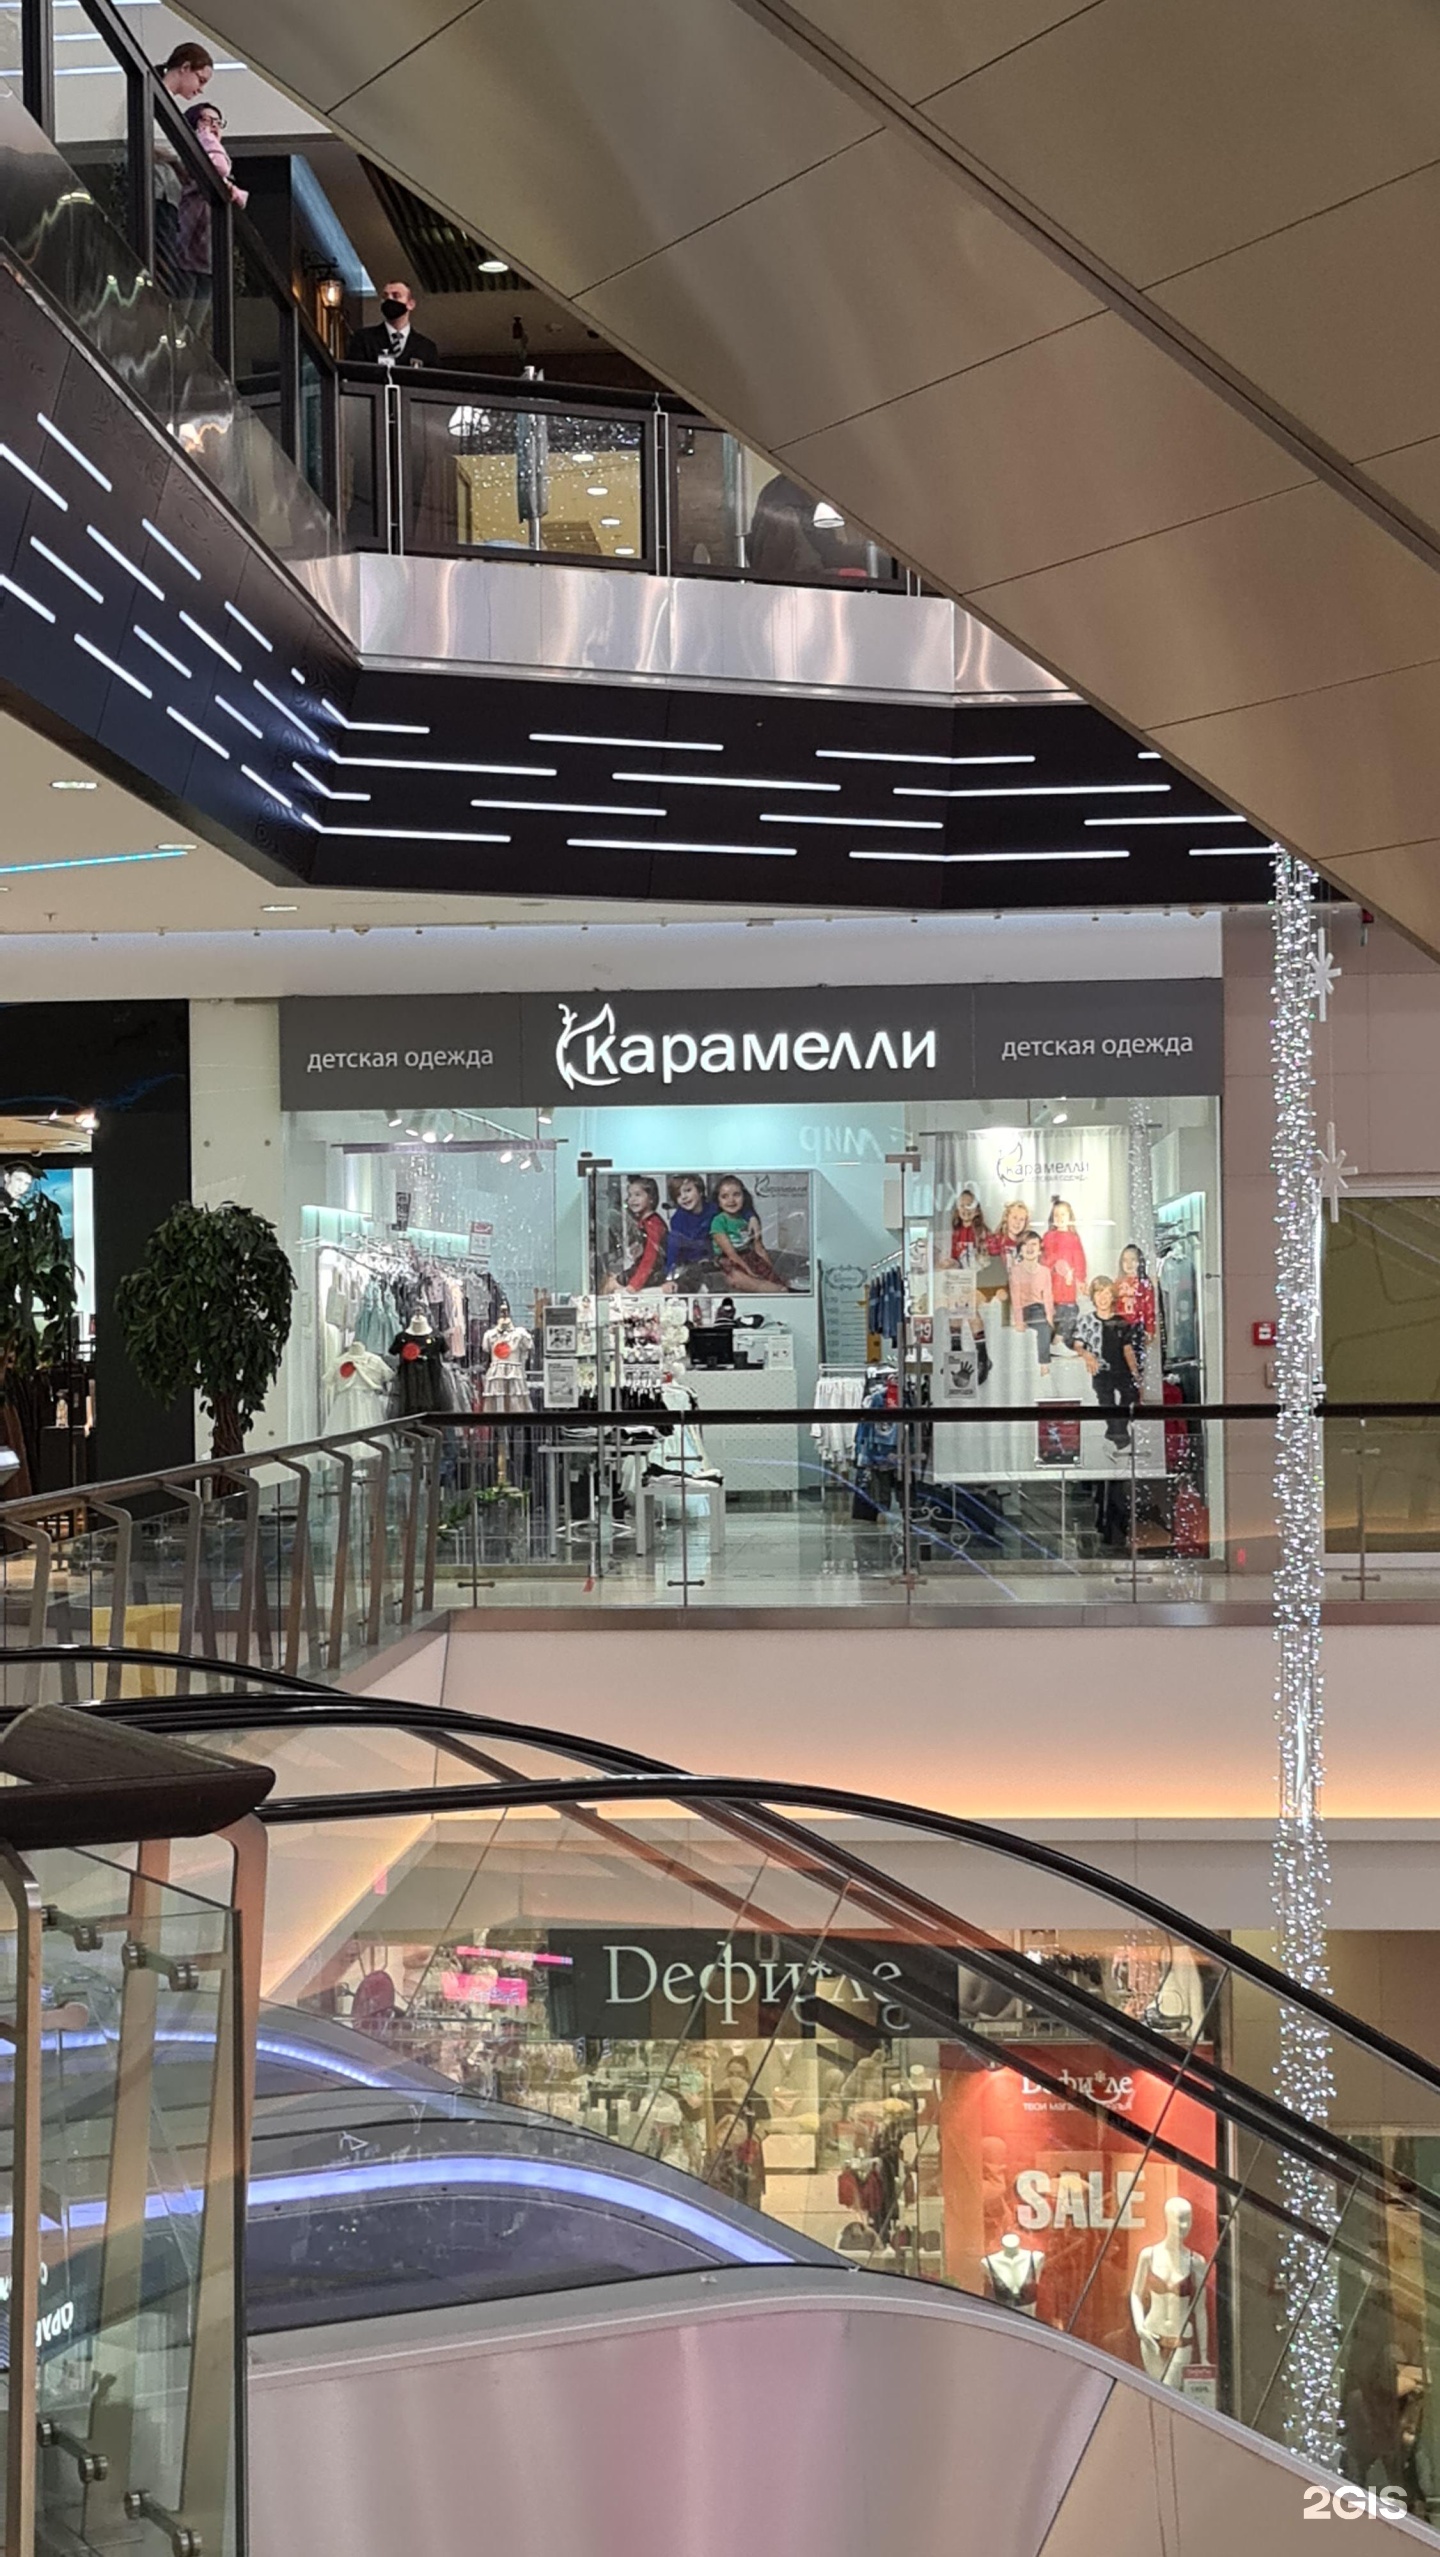 Карамелли Детская Одежда Магазины В Москве